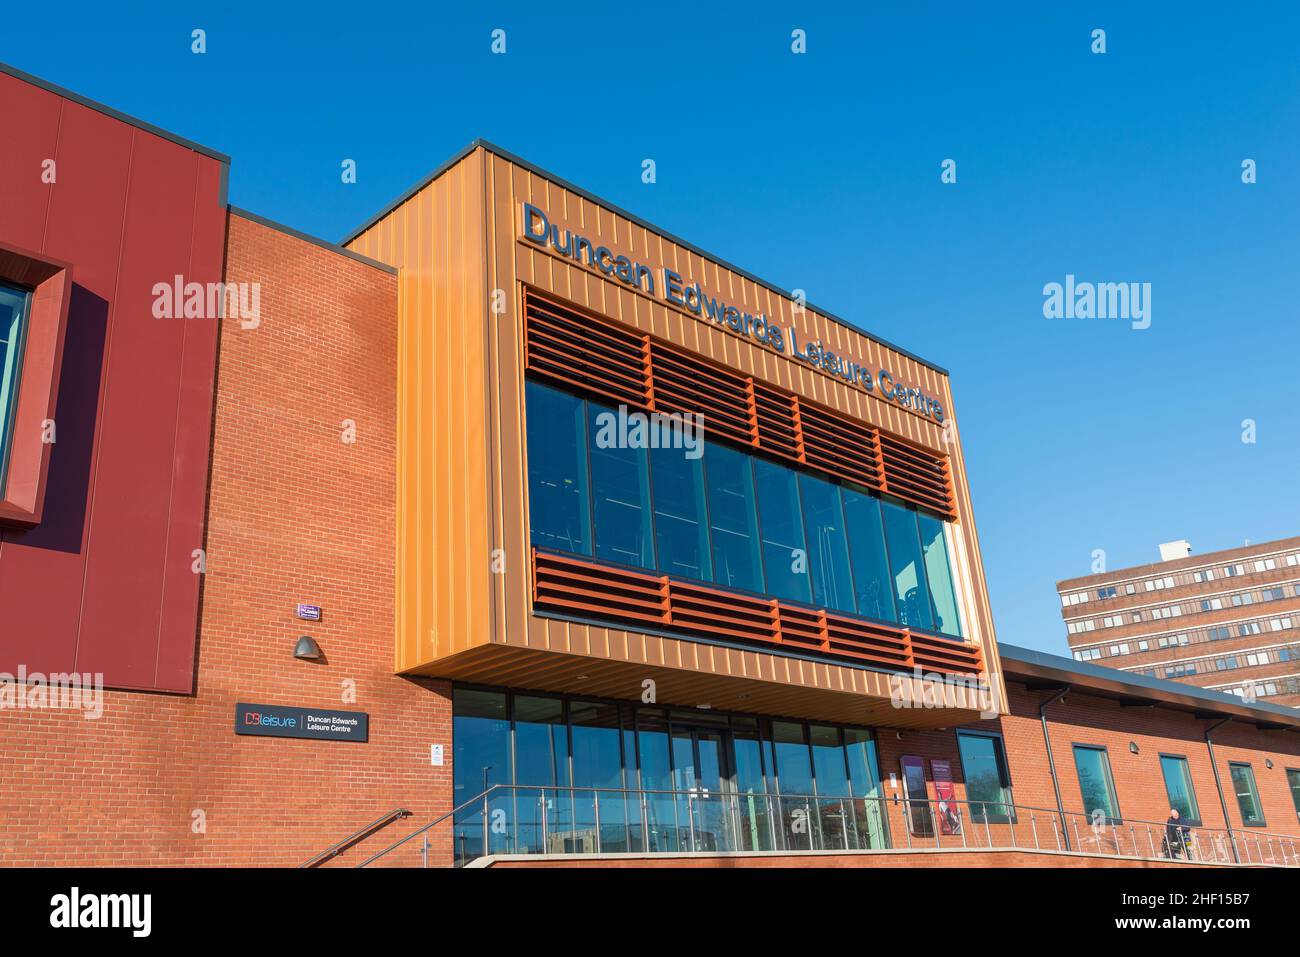 Le nouveau centre de loisirs Duncan Edwards de Dudley, West Midlands, a ouvert ses portes le 24 janvier 2022 Banque D'Images